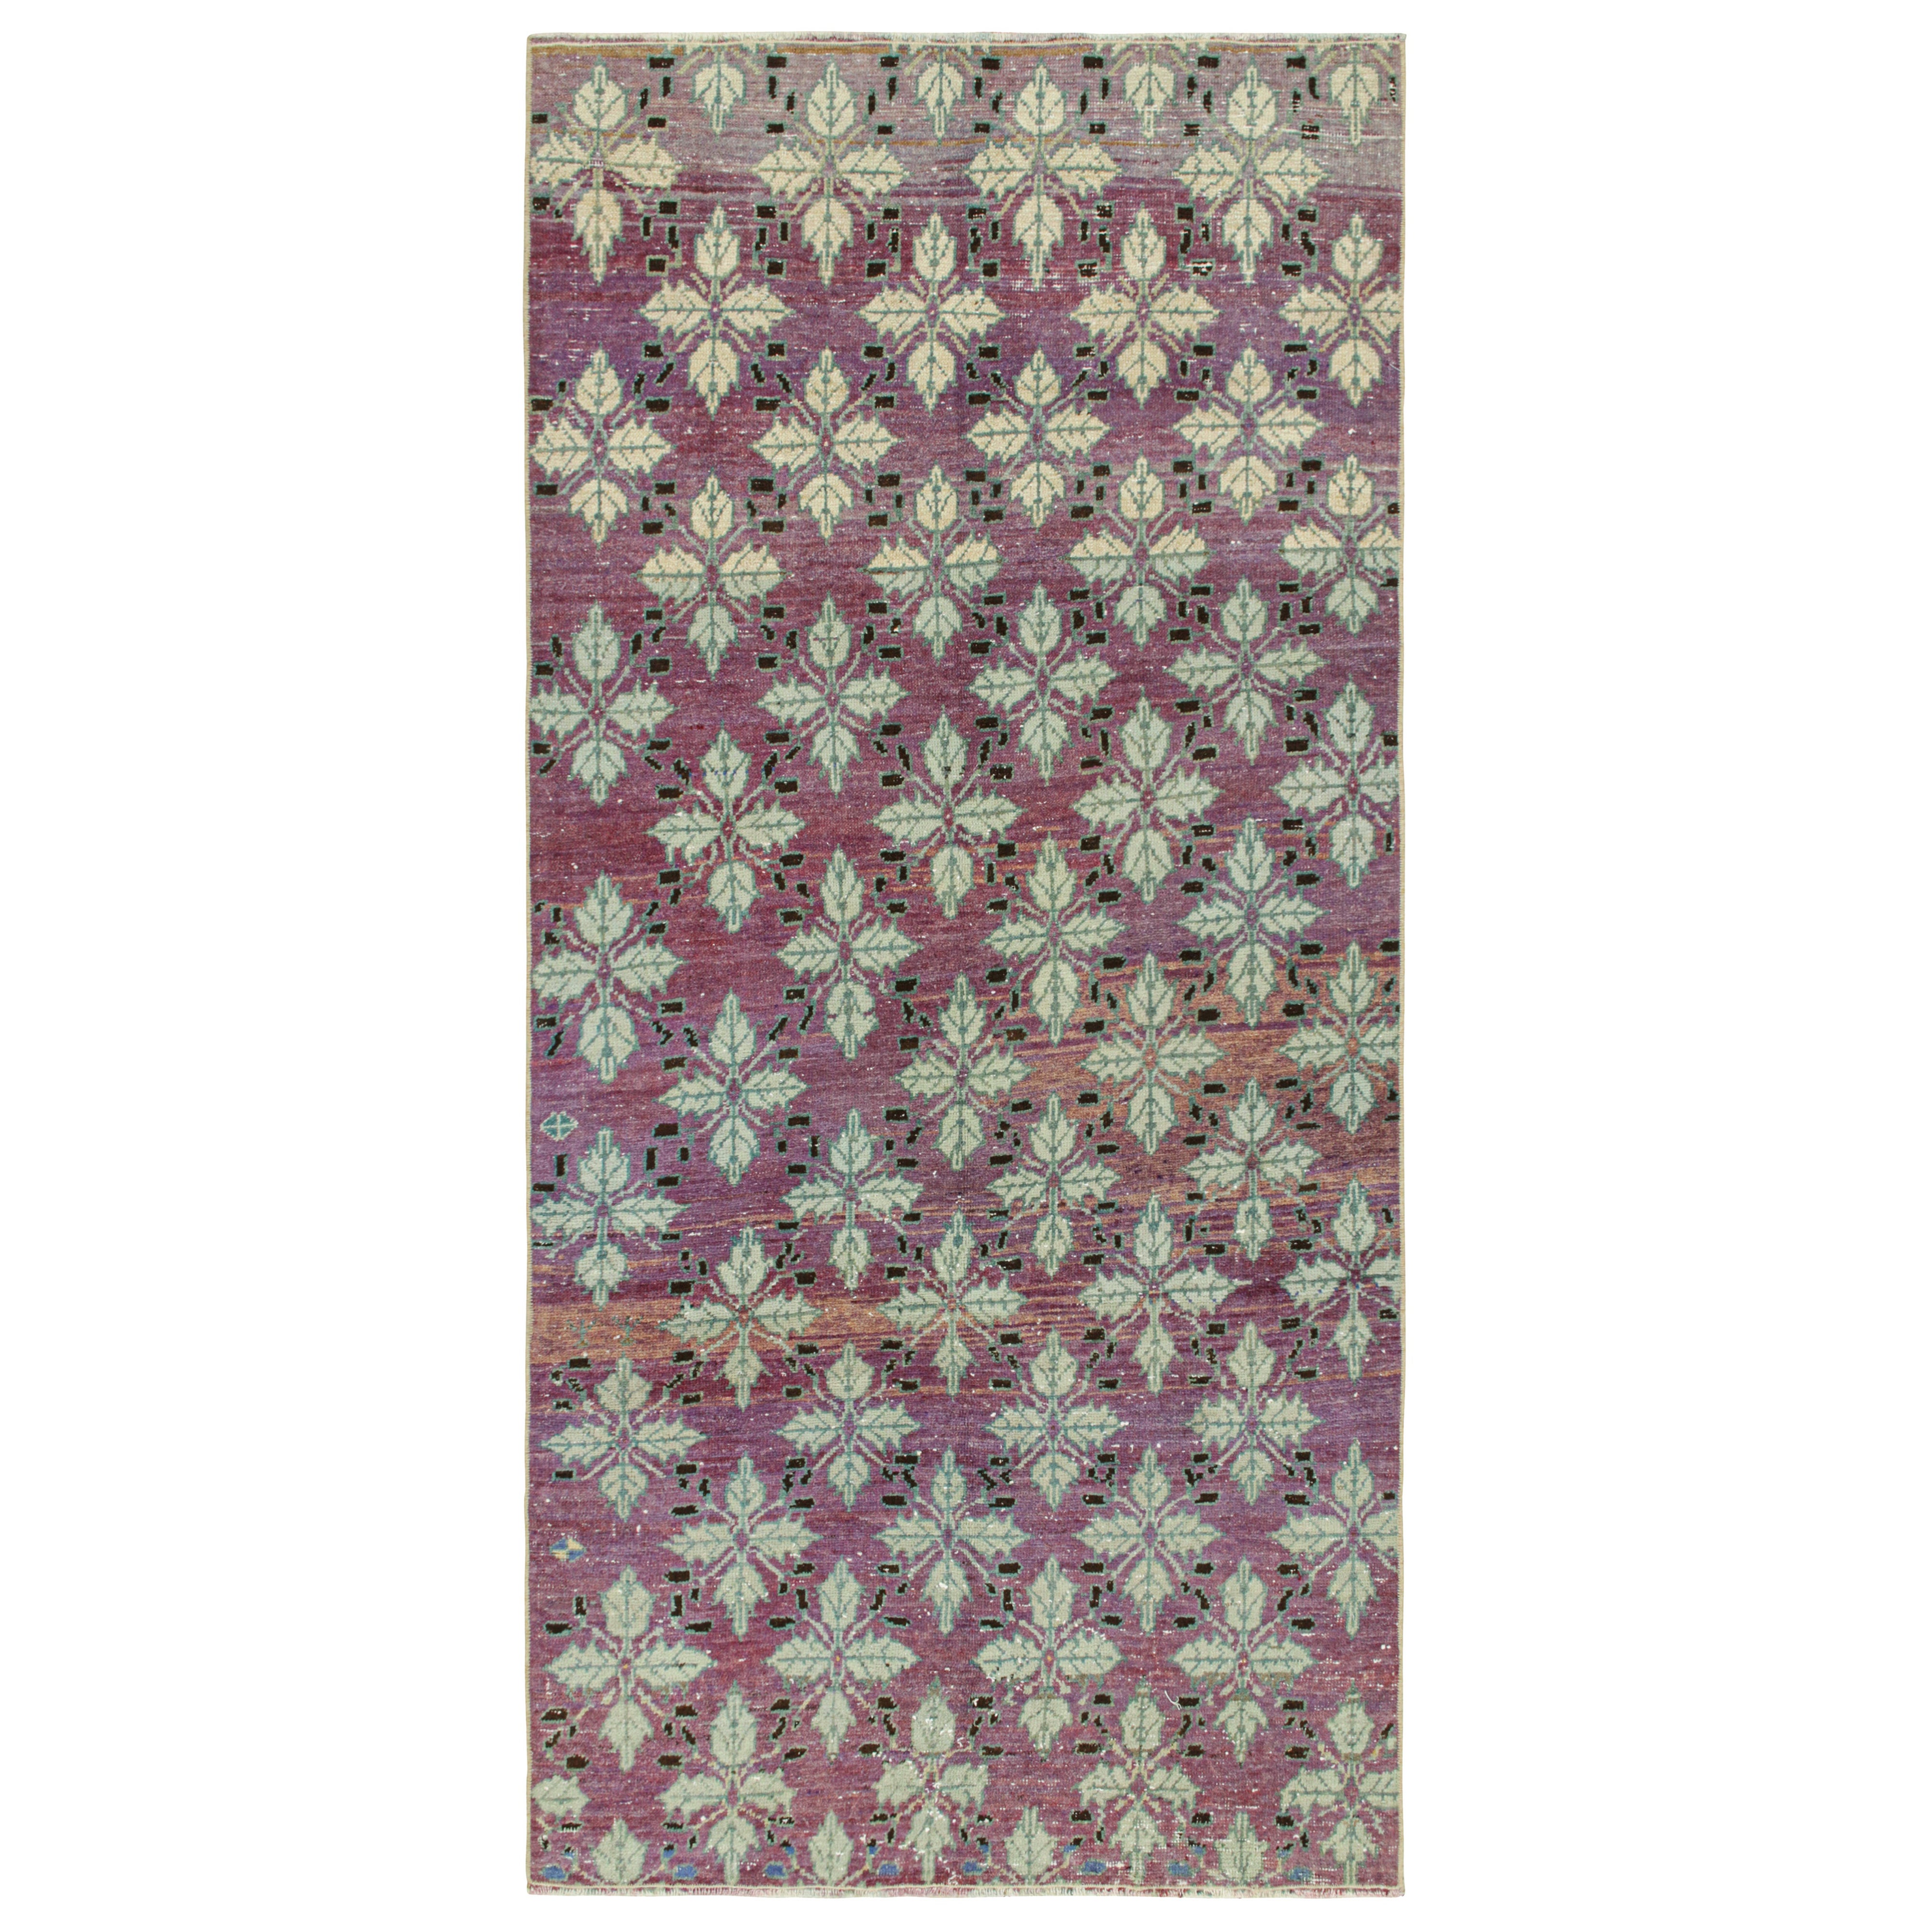 Vintage Zeki Müren Rug in Purple with Floral Patterns, by Rug & Kilim For Sale